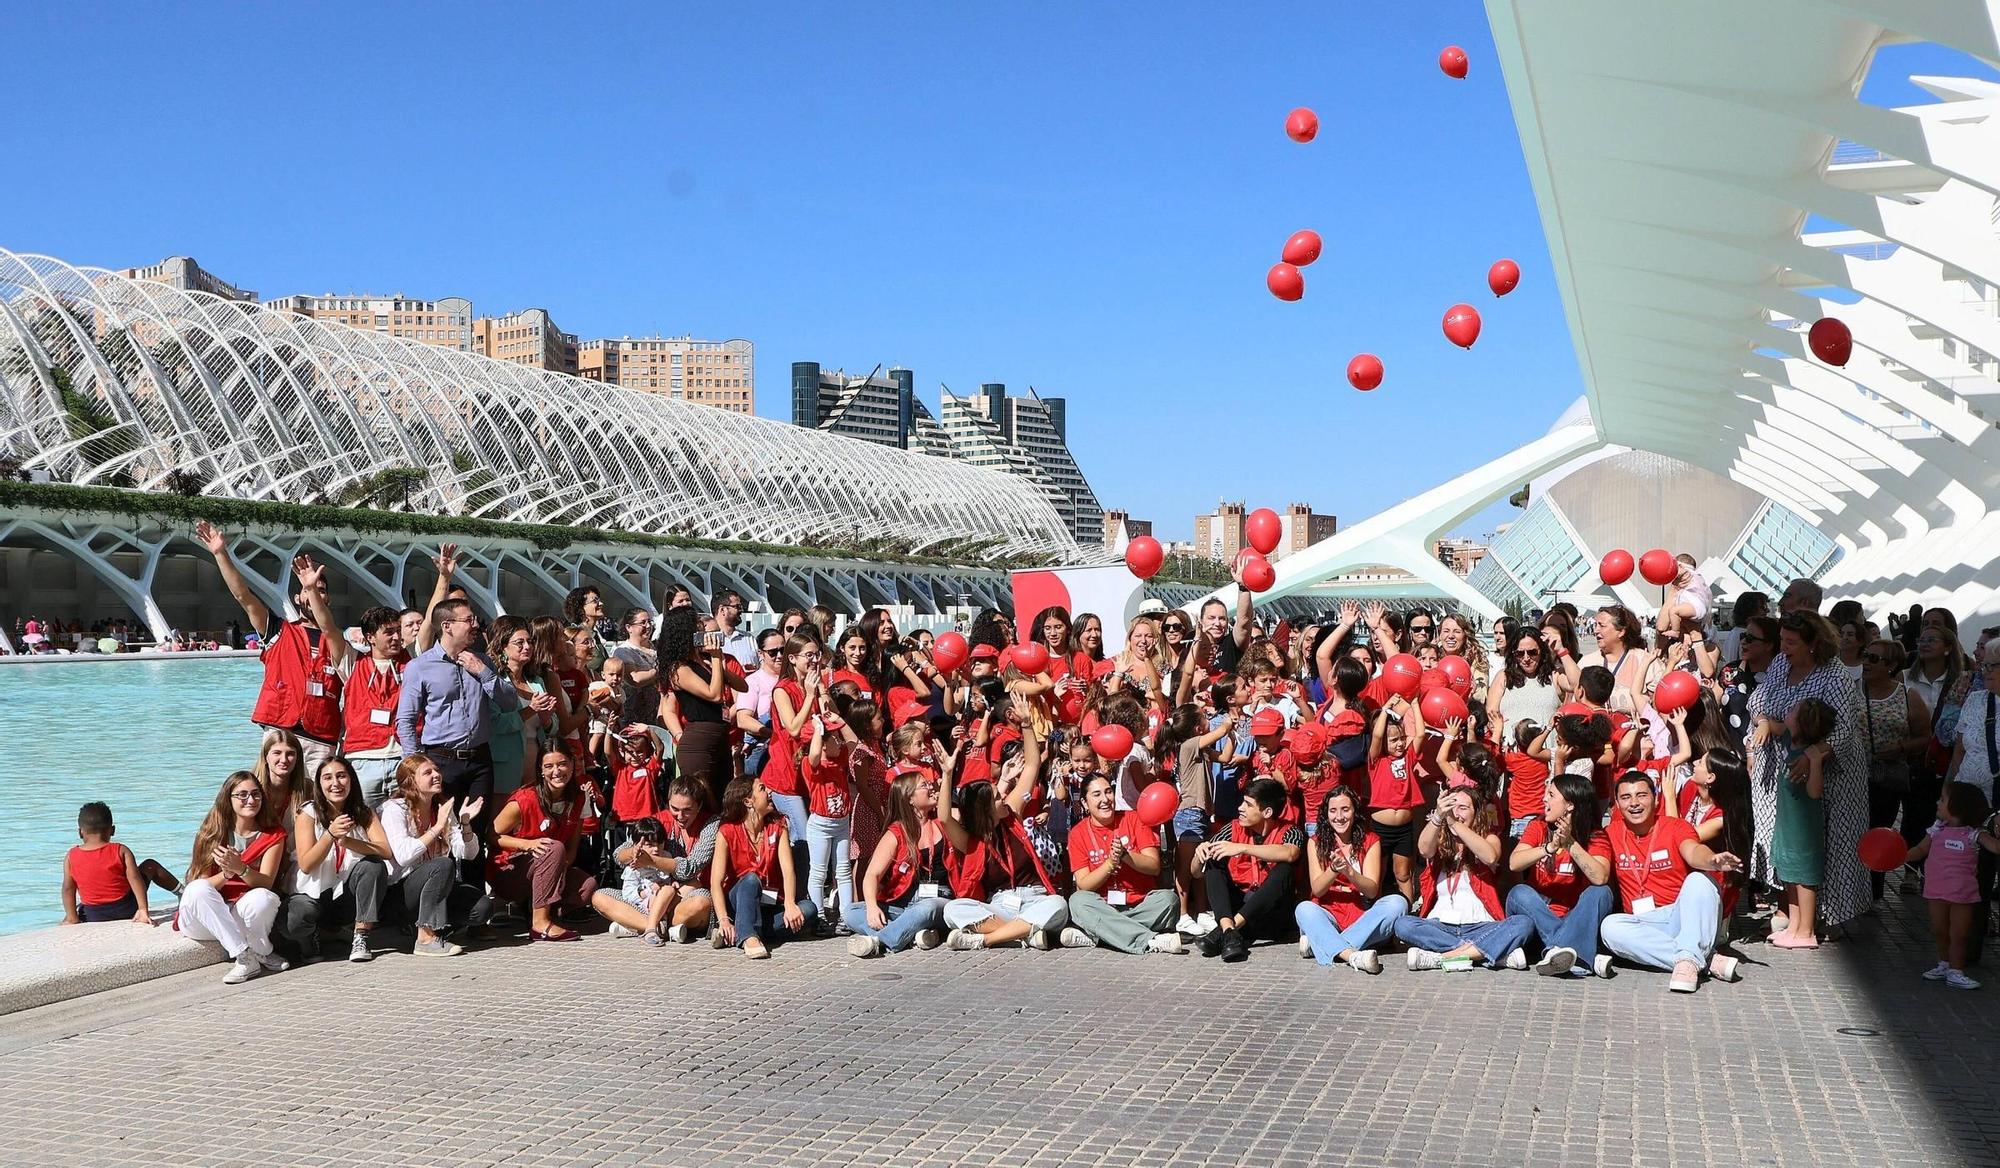 Congreso de familias monoparentales en València